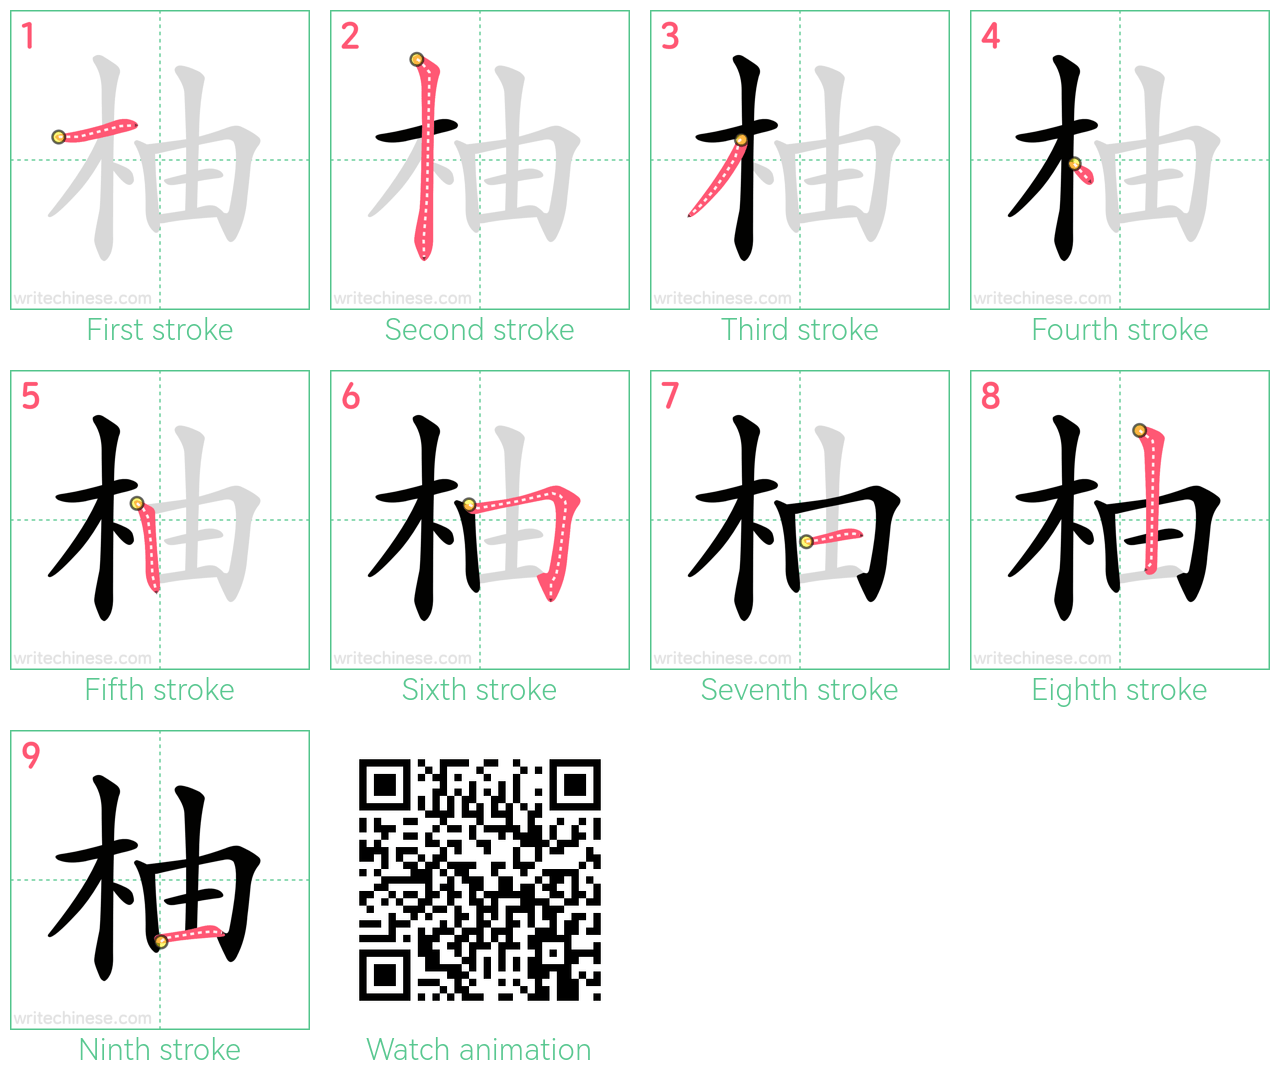 柚 step-by-step stroke order diagrams